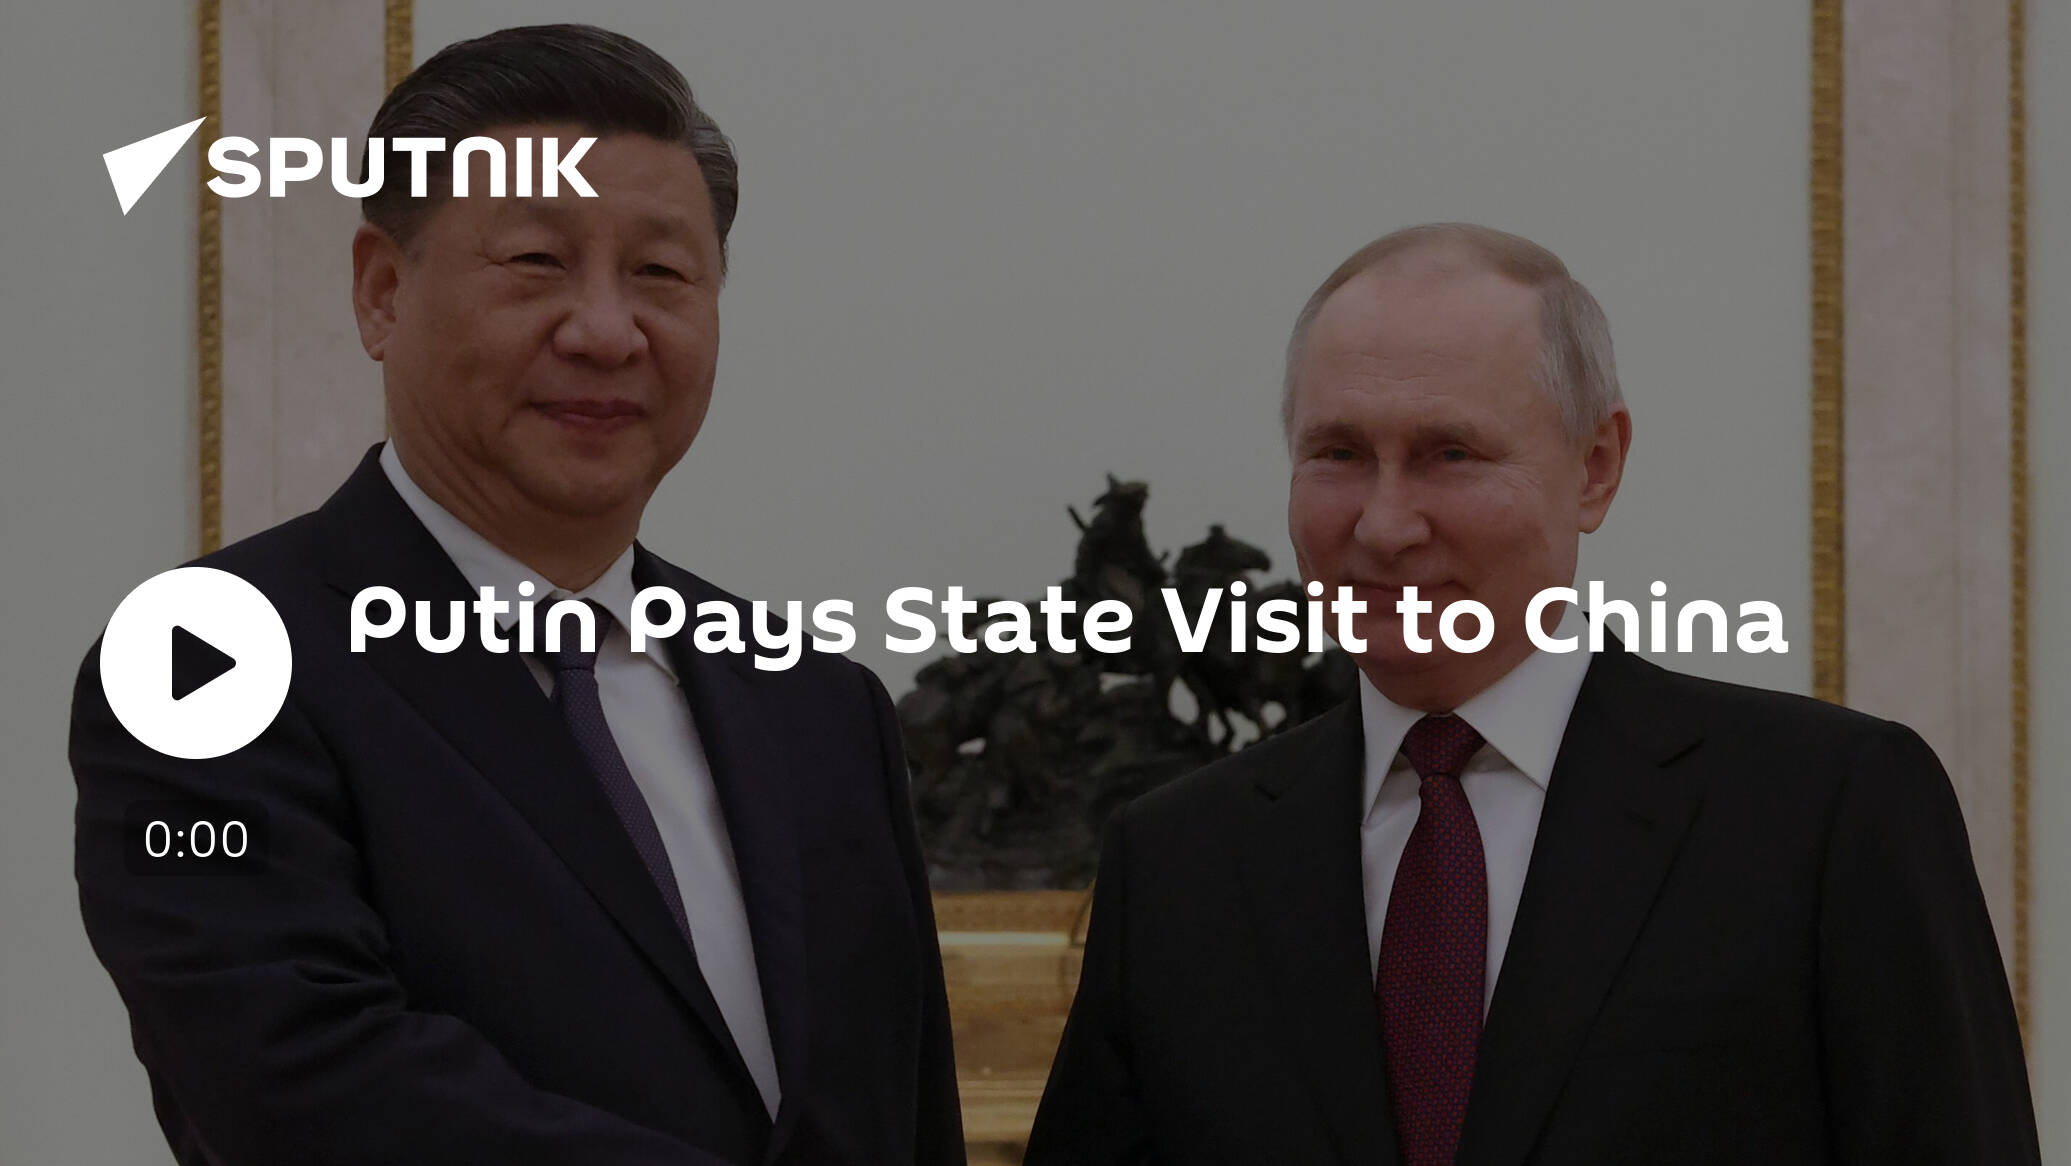 Putin Pays State Visit to China [Video]